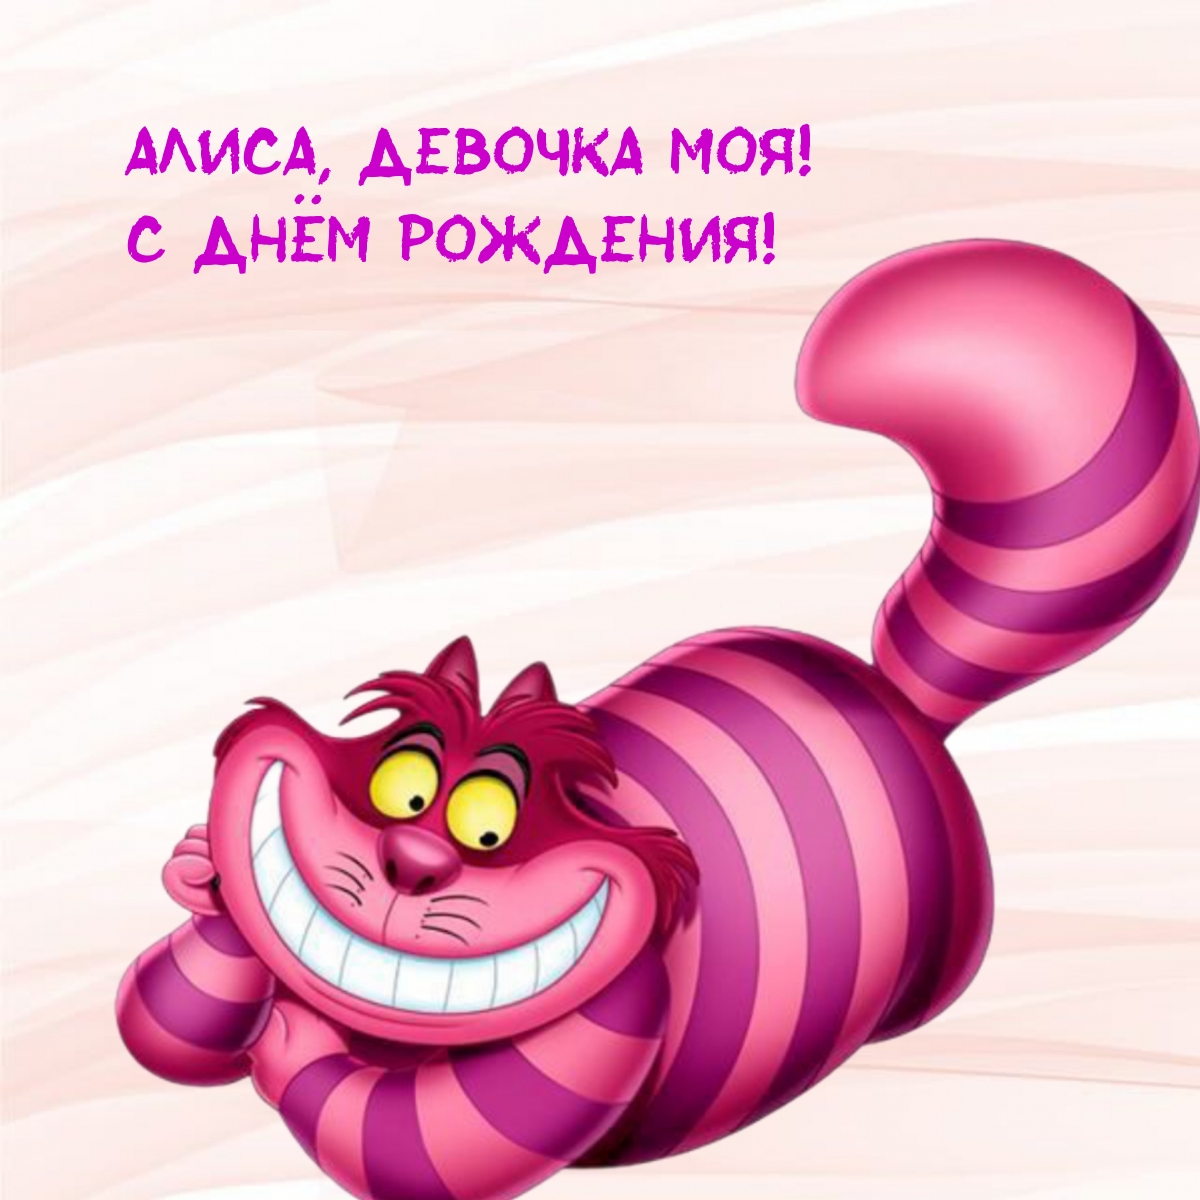 Чеширский кот из мультфильма Алиса в стране чудес